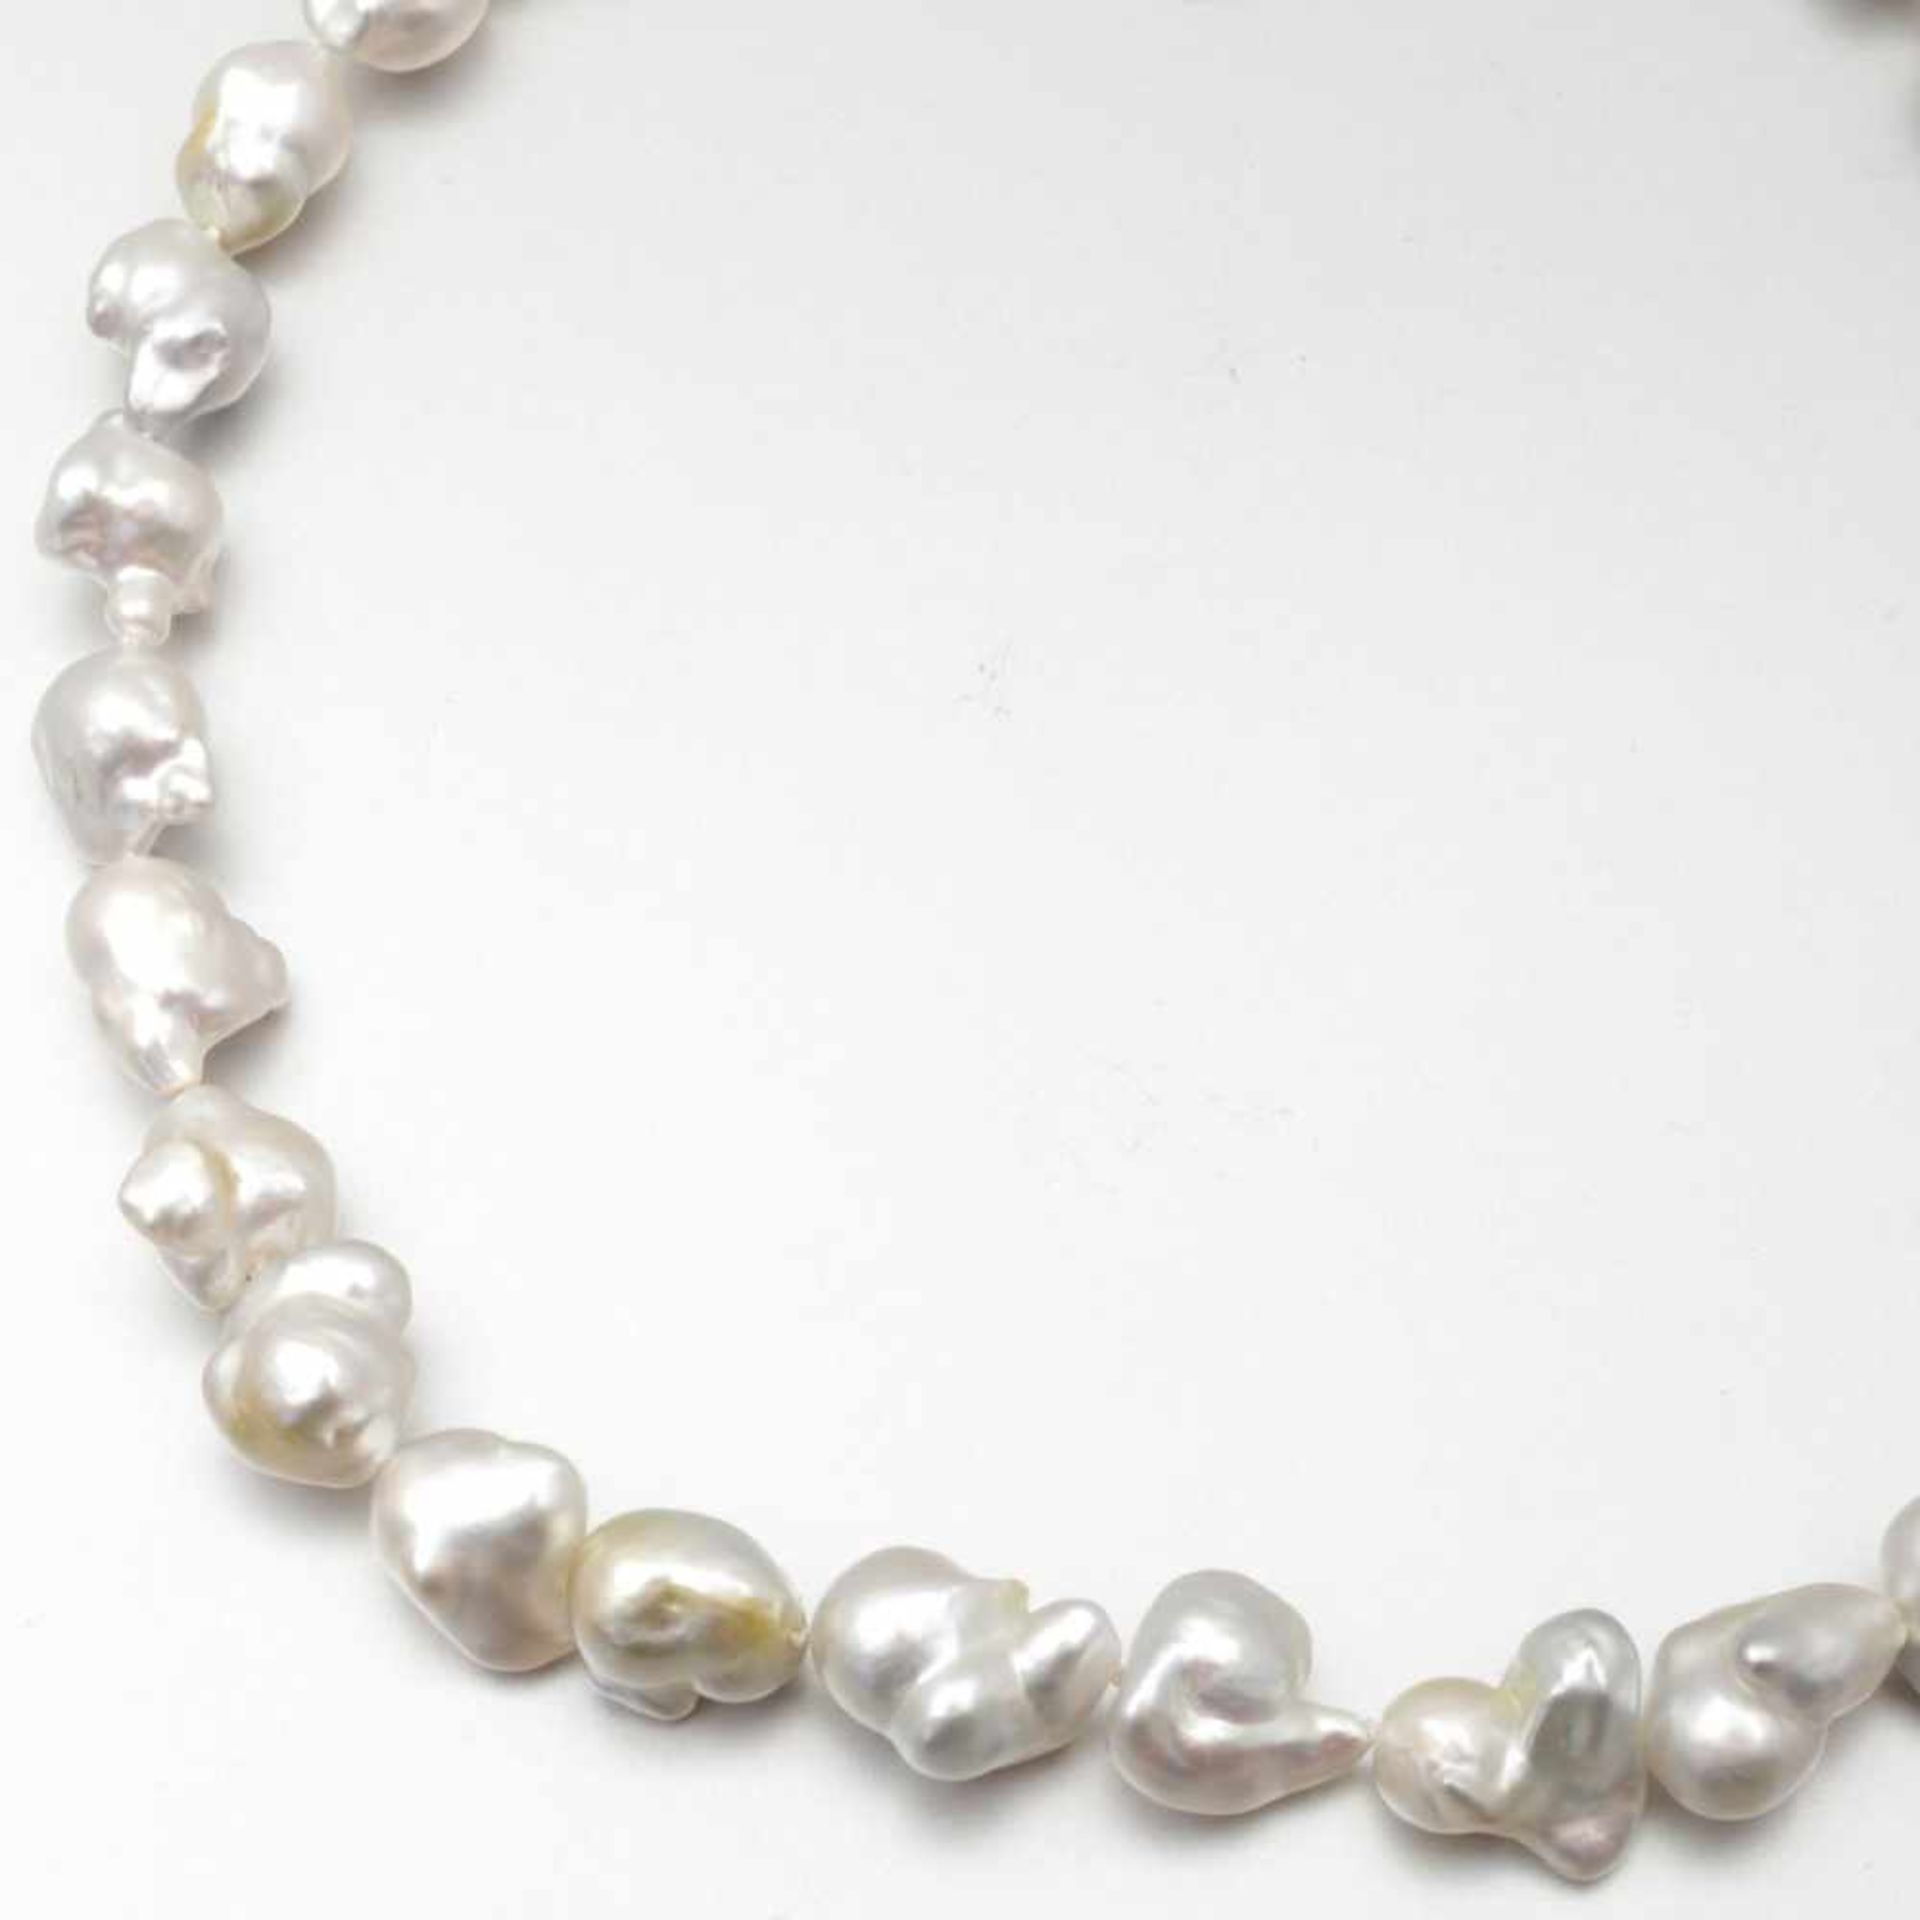 Südsee-Keshi-Perlencollier32 weiß-/silbergraue Südsee-Keshi-Perle in sehr feinem Lüster. D. 15-11